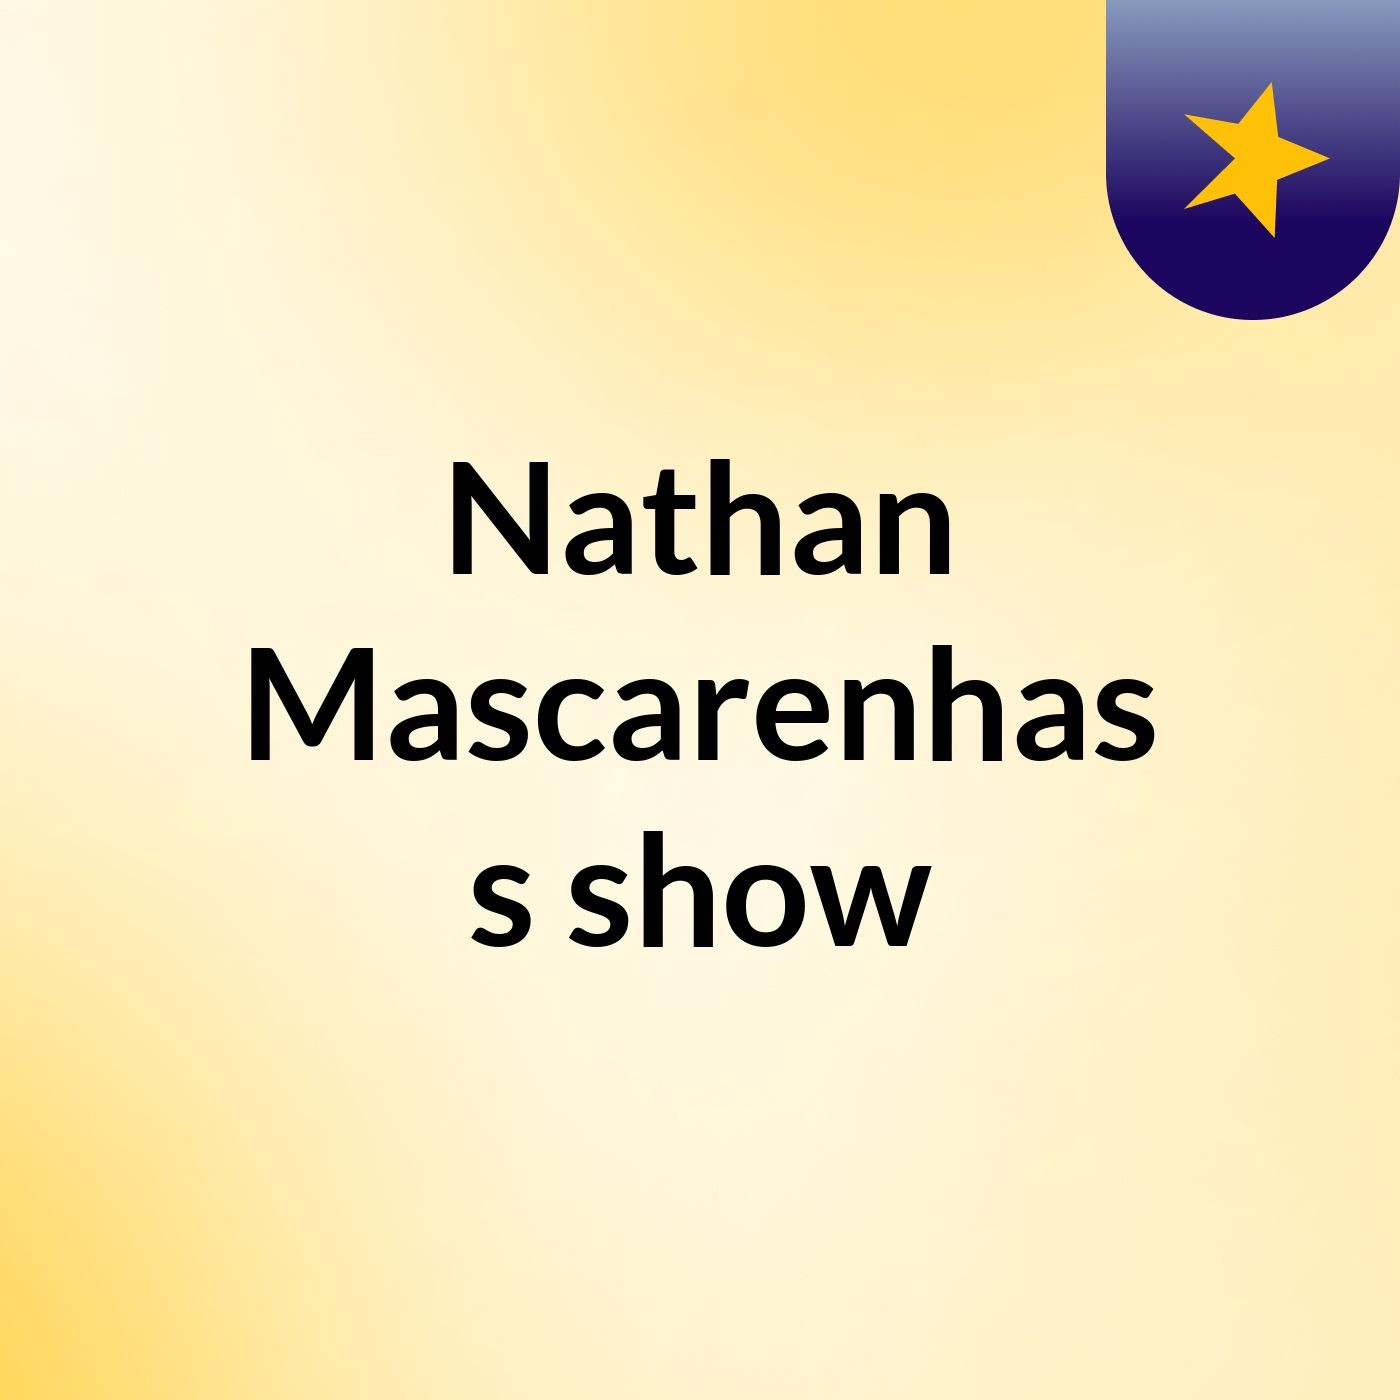 Nathan Mascarenhas's show